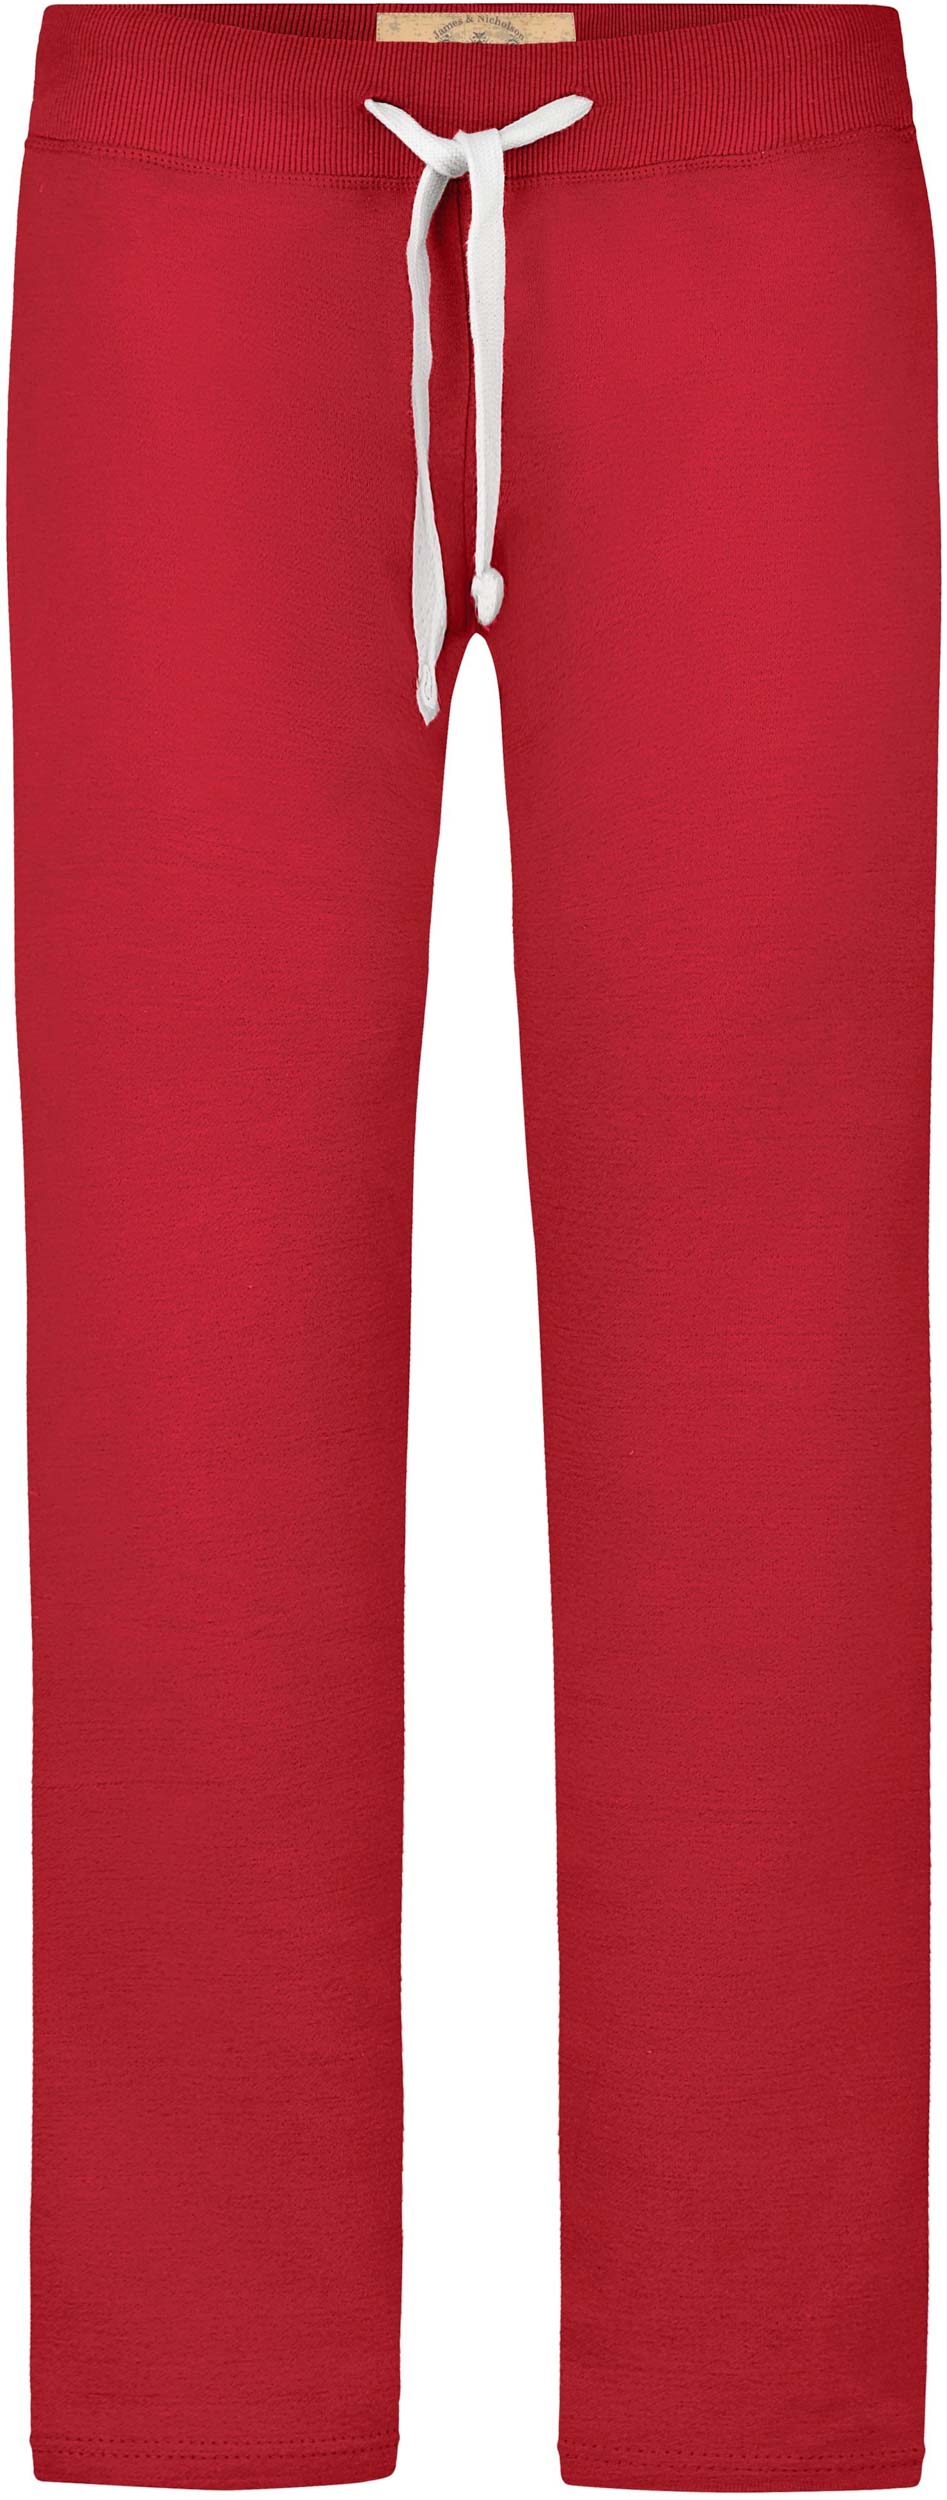 Dámské tepláky James & Nicholson Vintage Pants|L